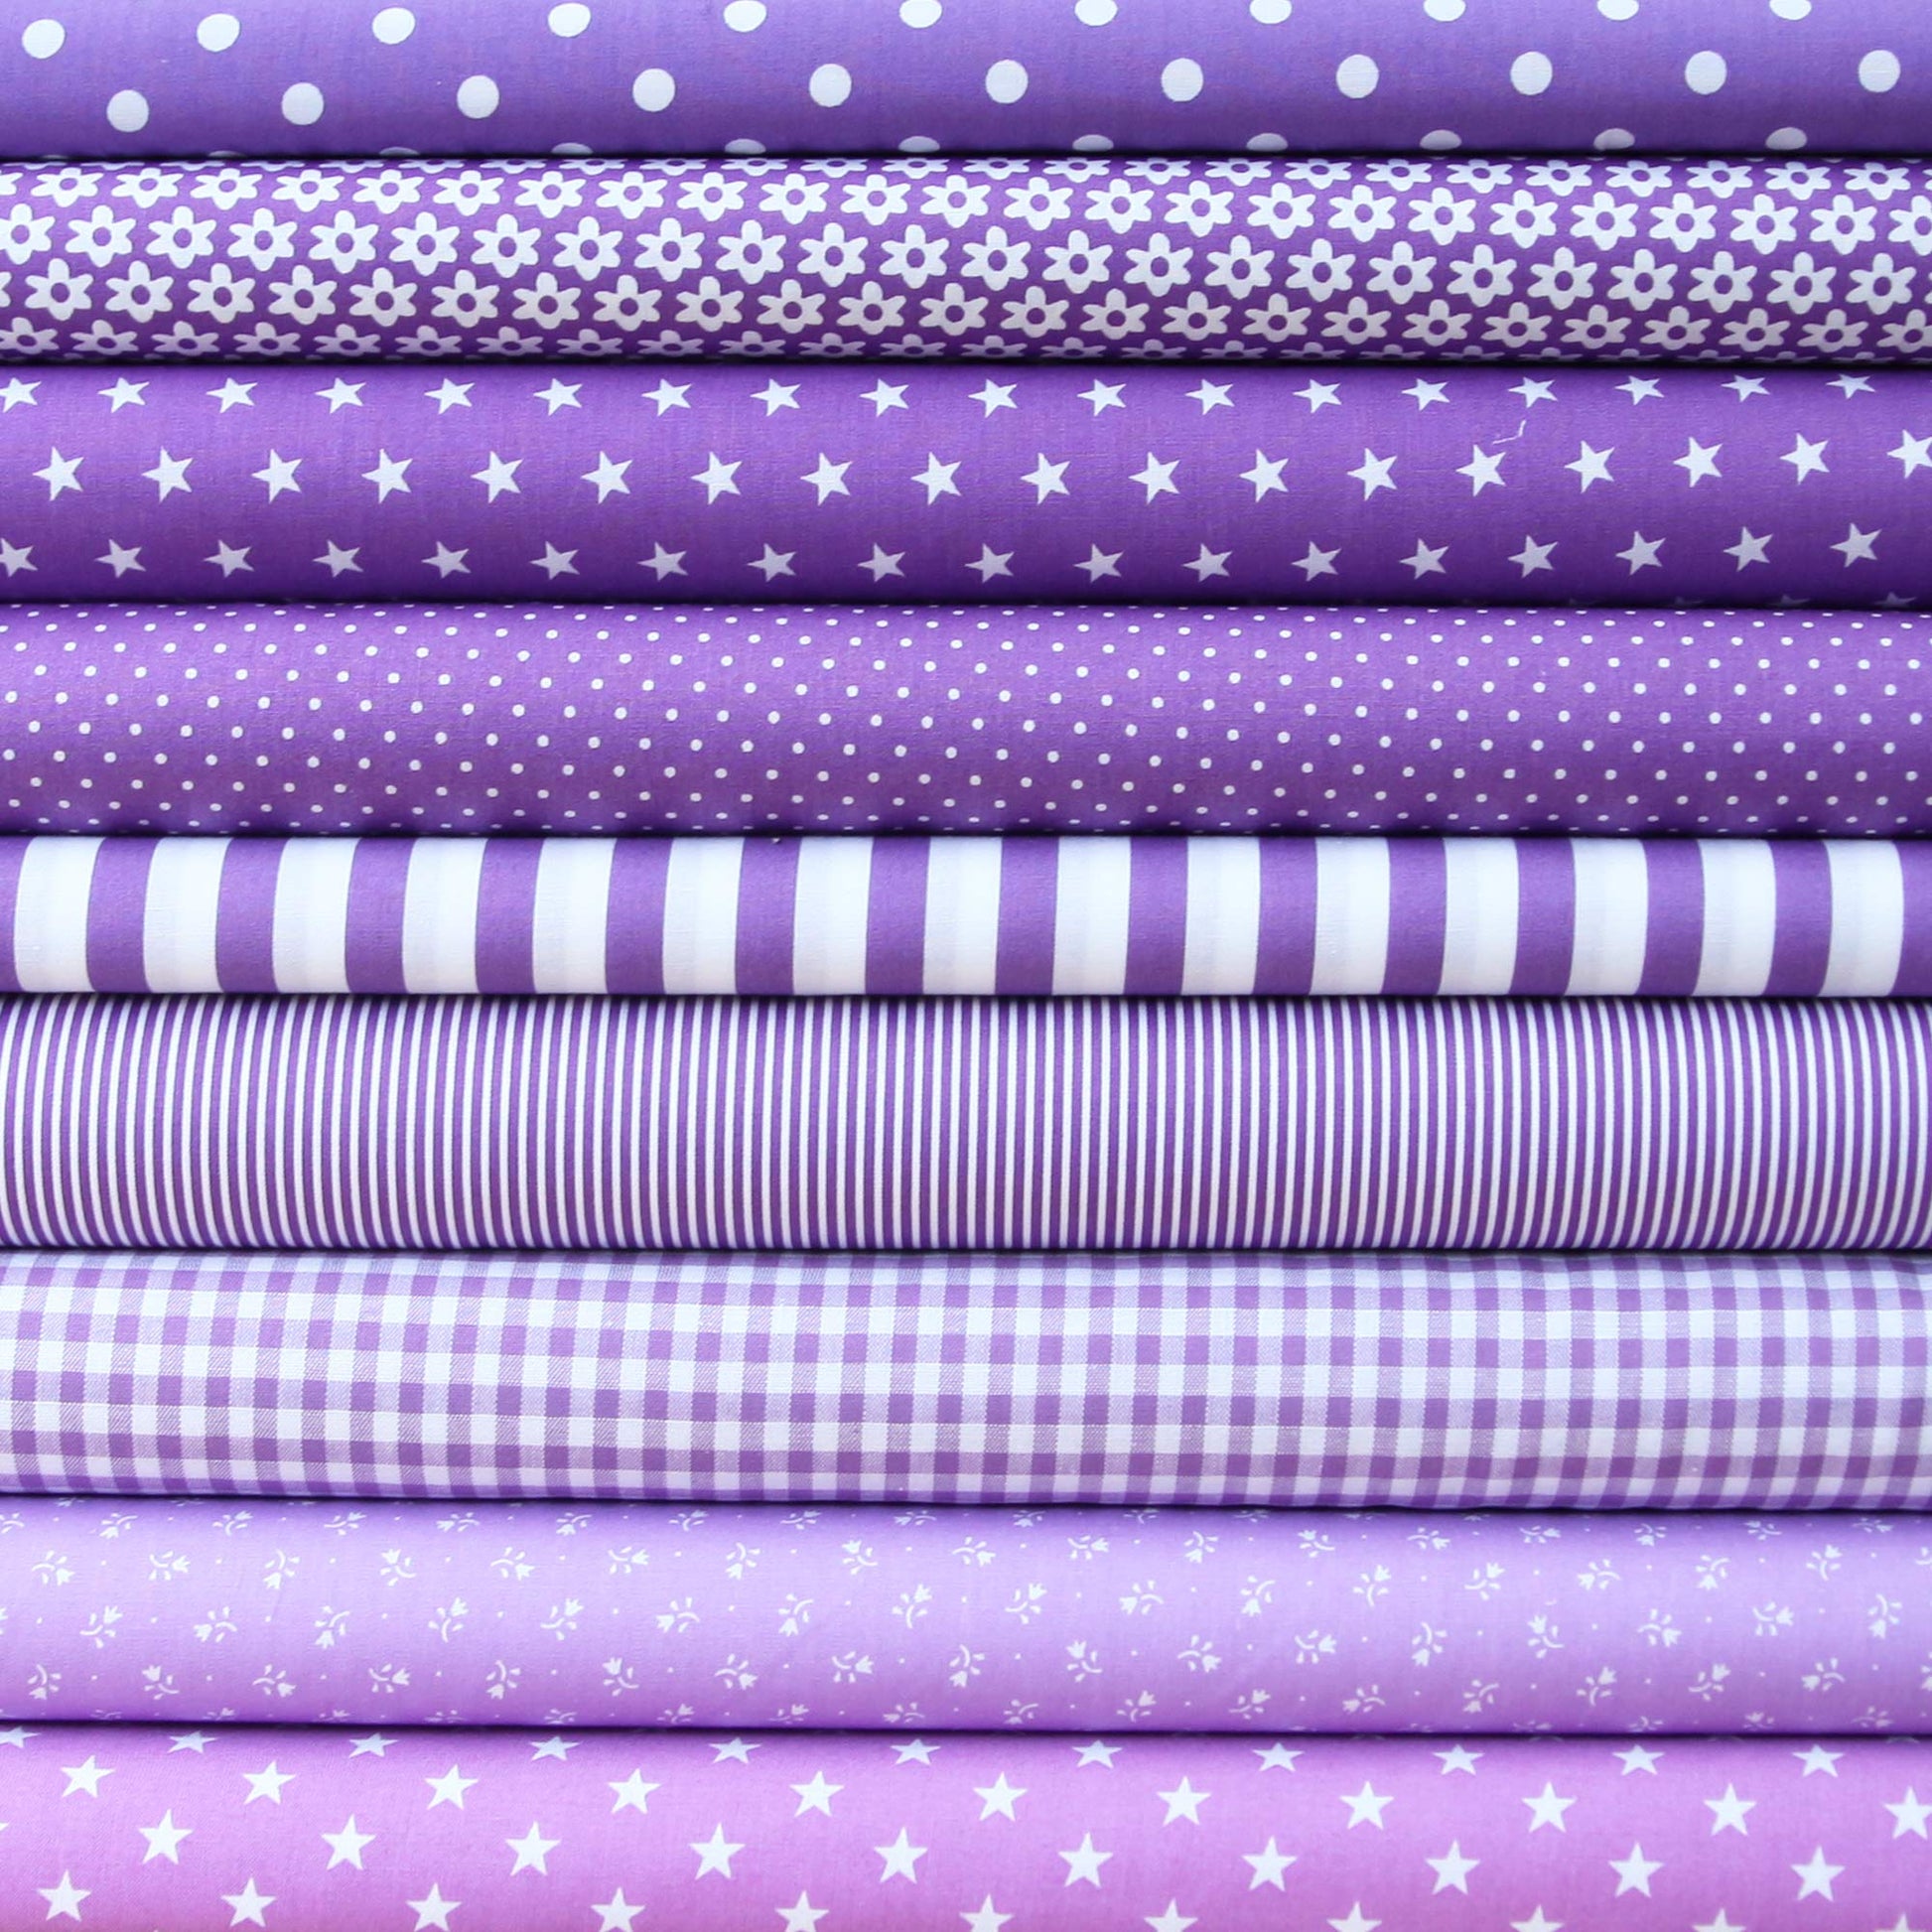 Baumwollstoff mit Punkten / Popeline " 0,8 cm weiße Dots auf violett" - Patchwork 100% Baumwolle lila - Stoffe Kudellino